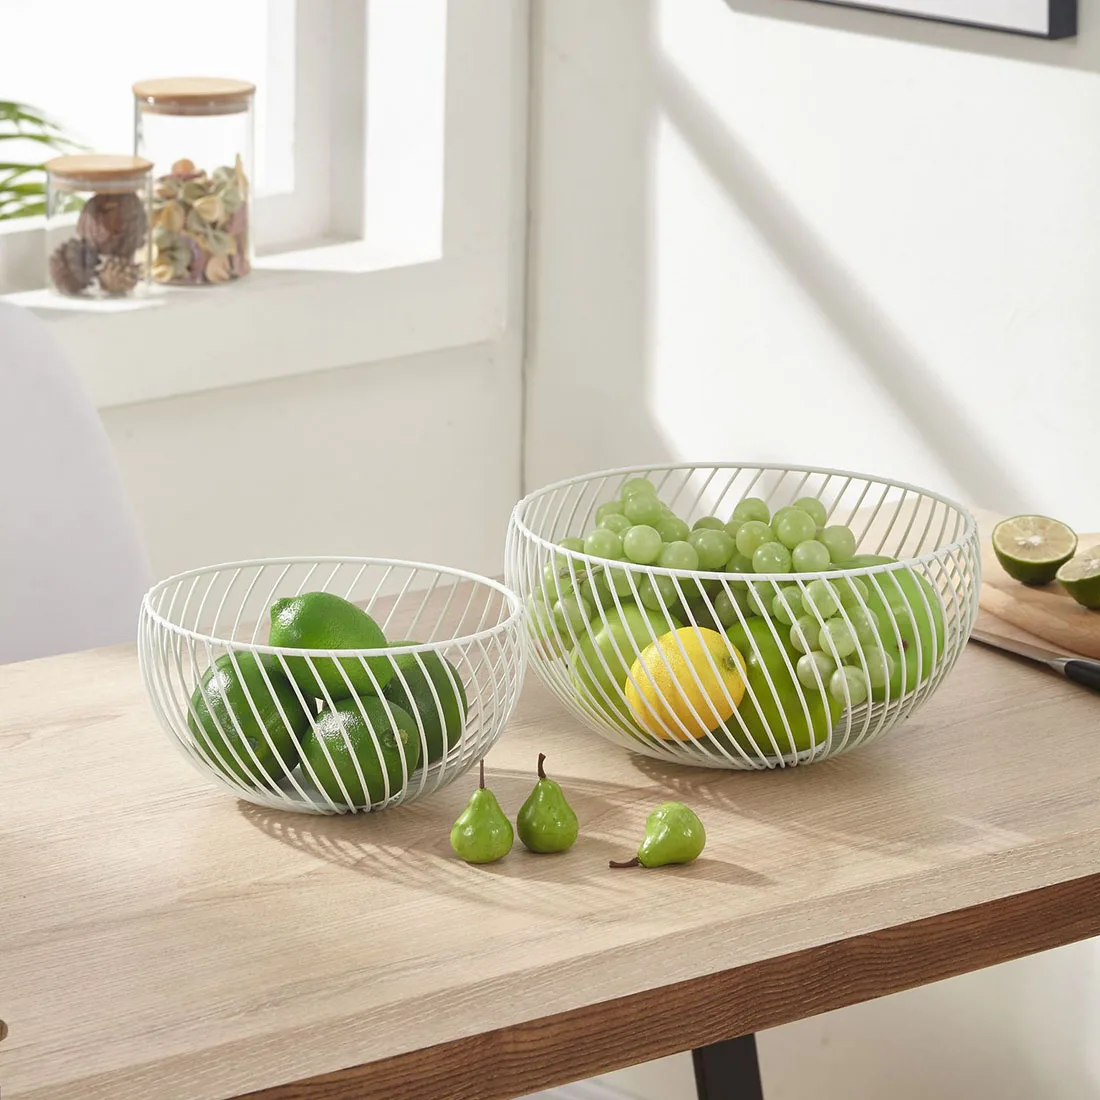 Details about    Metal Fruit Basket Holder Kitchen Dinning Table Decoration Fruit Bowl 